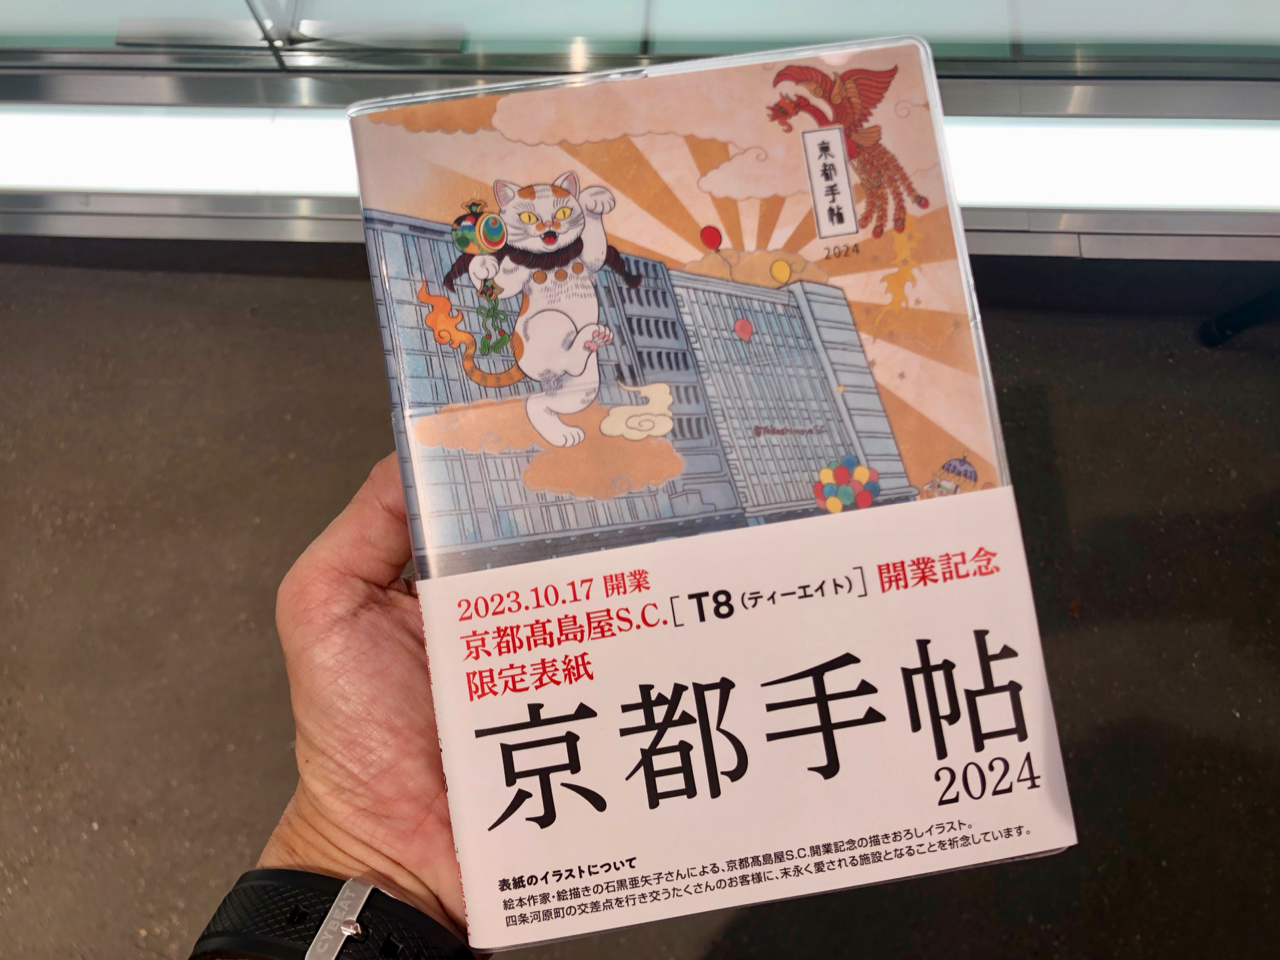 オープニングセレモニーの際にいただいた、オリジナル表紙の「京都手帖」。石黒亜矢子さんによるメインビジュアルがかわいすぎる。6階で関連グッズも販売されています